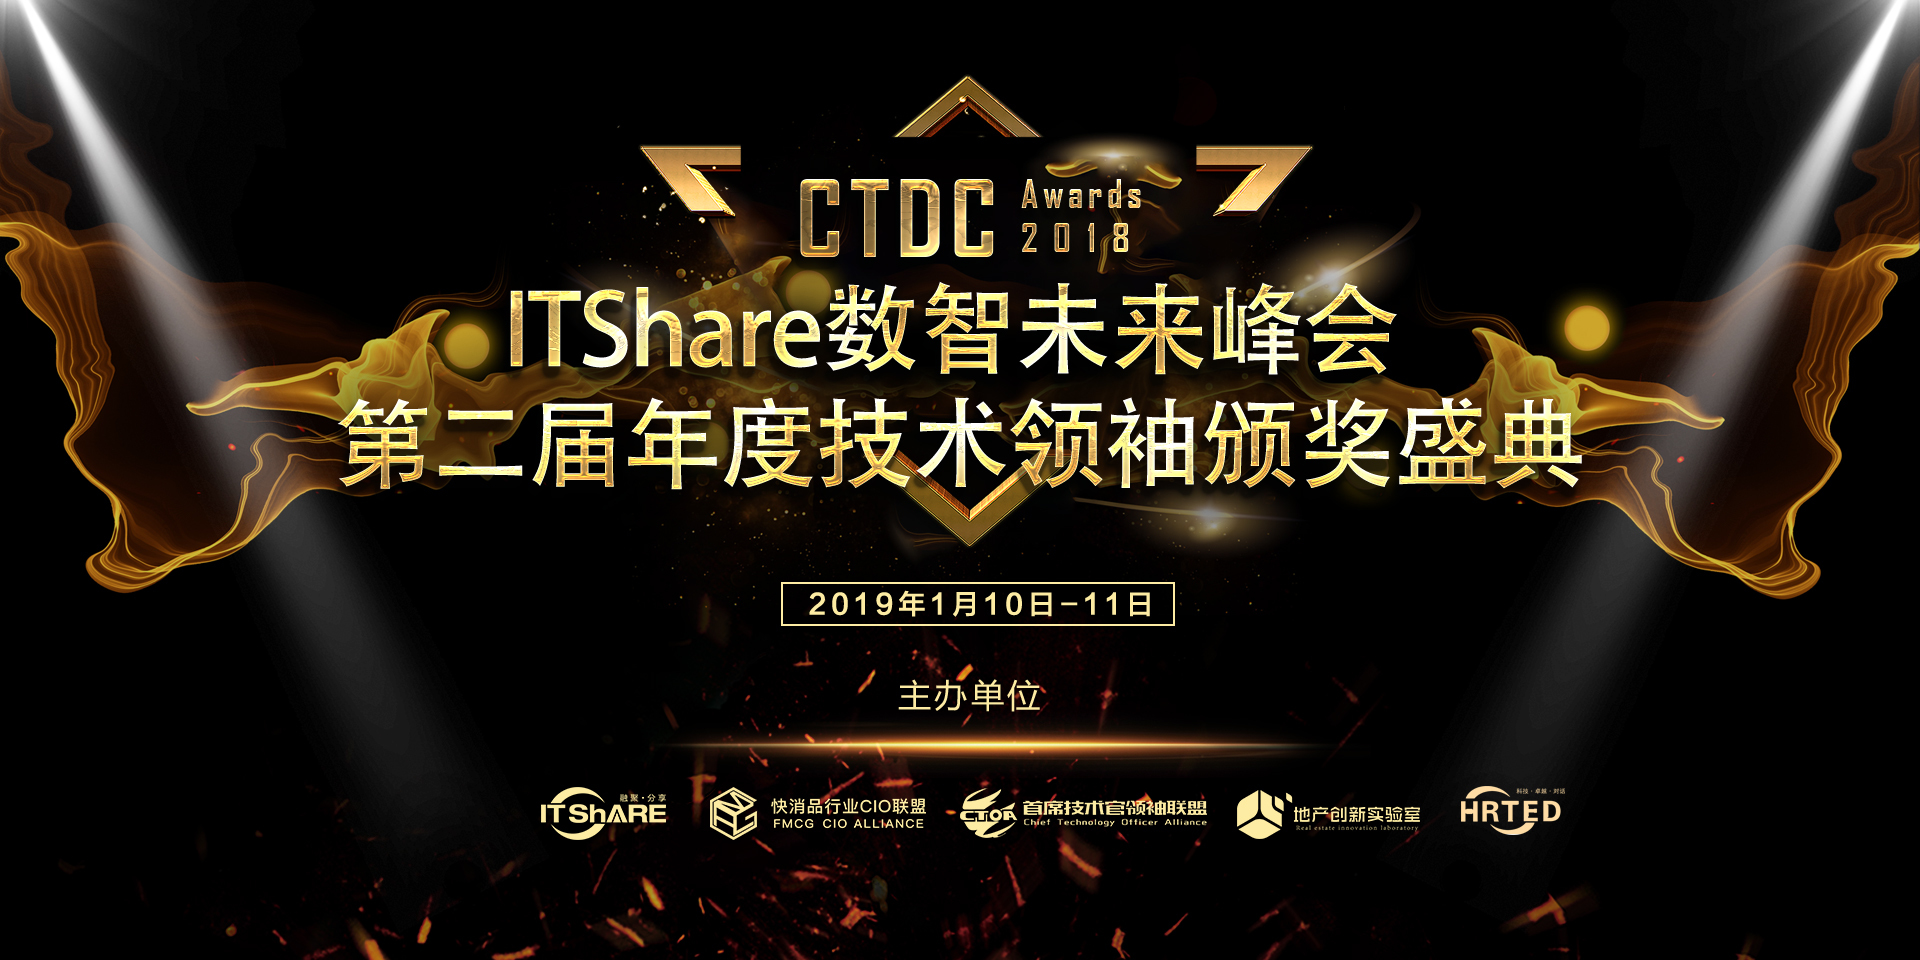 2019.1.10-第二届CTDC年度技术领袖颁奖盛典开幕在即！